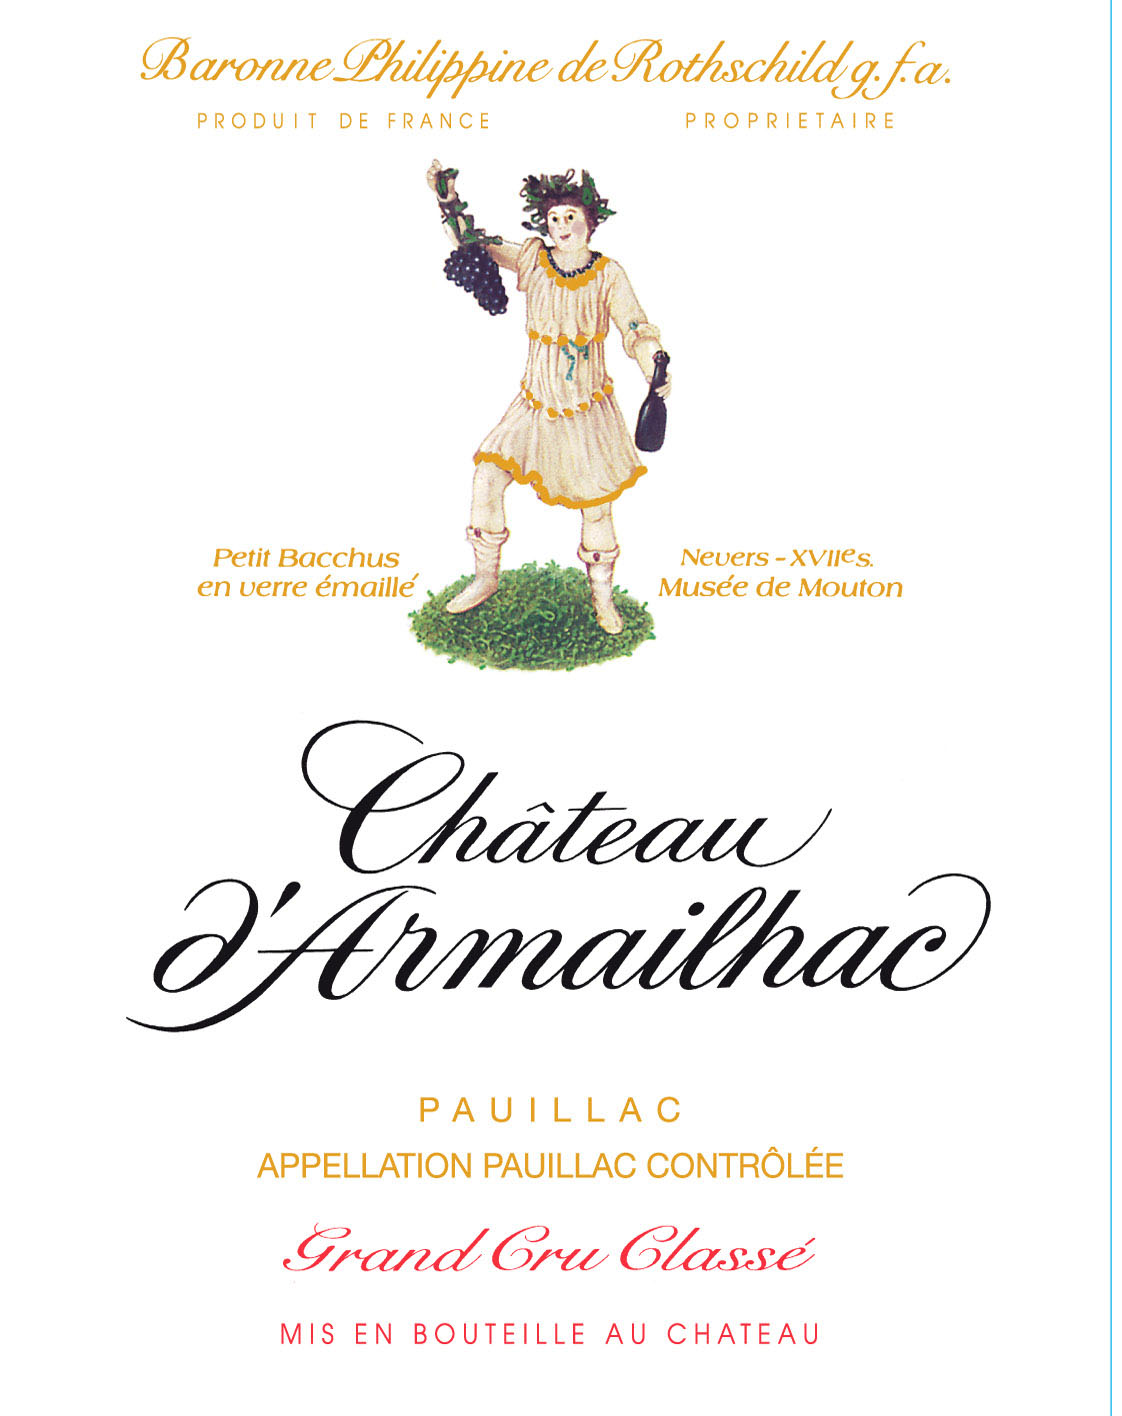 Chateau D'Armailhac label